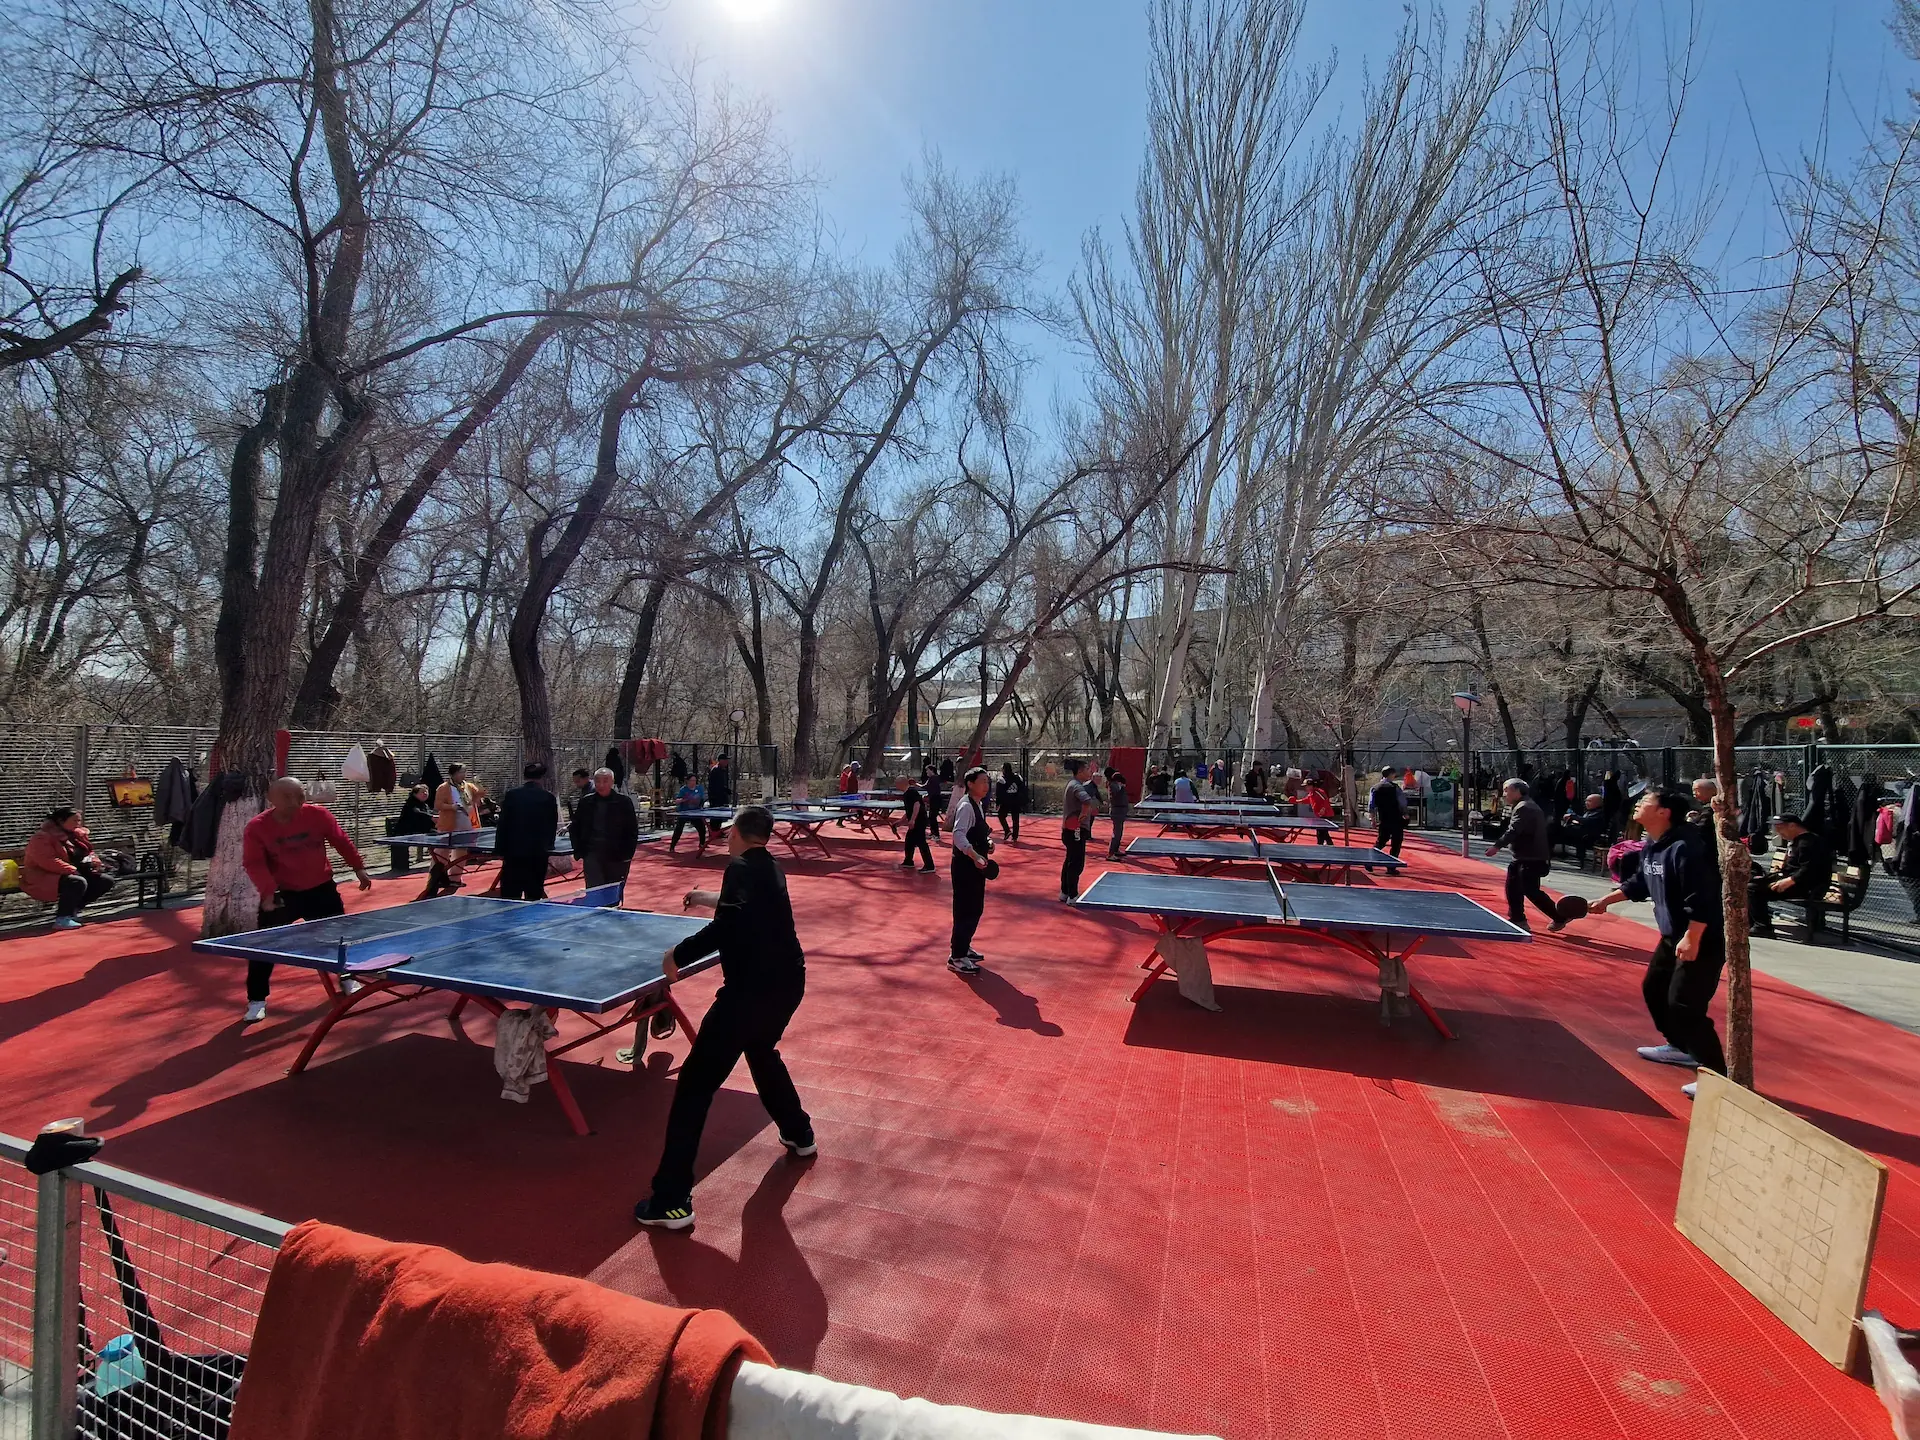 Un espace ping-pong très bien entretenu, où on voit huit tables en pleine partie.